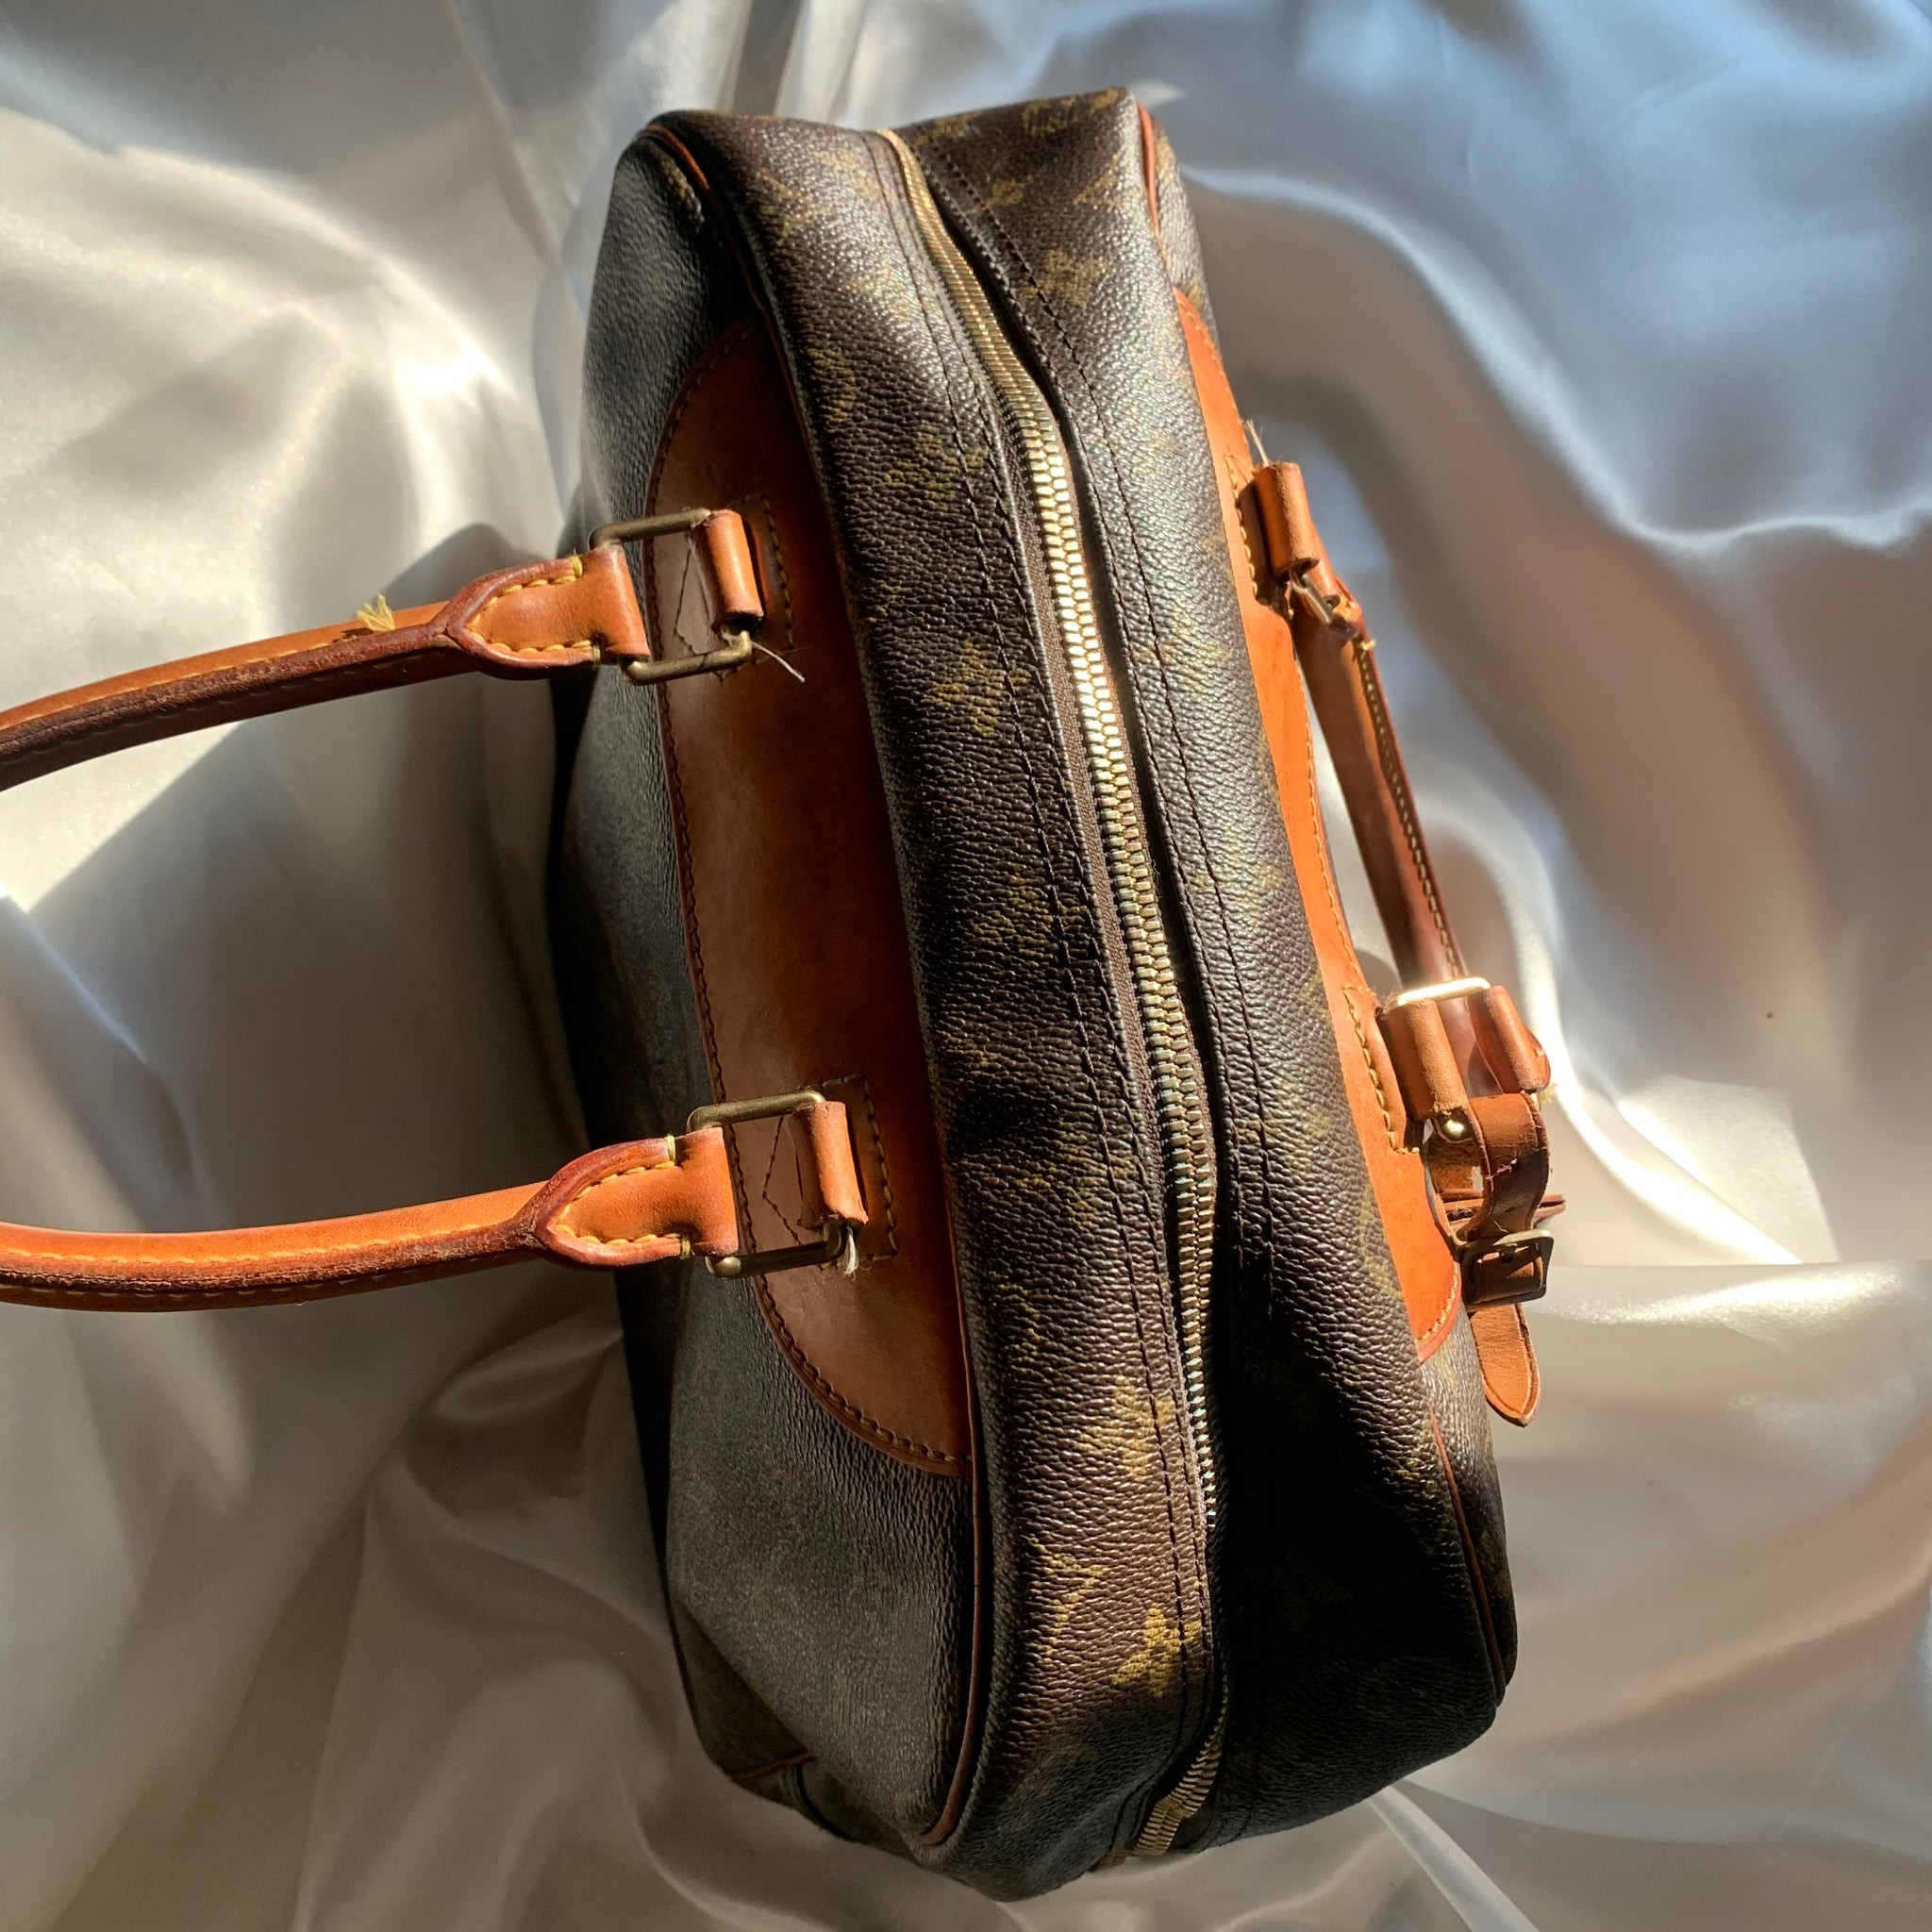 Authentic Louis Vuitton Deauville Handbag Monogram - clothing